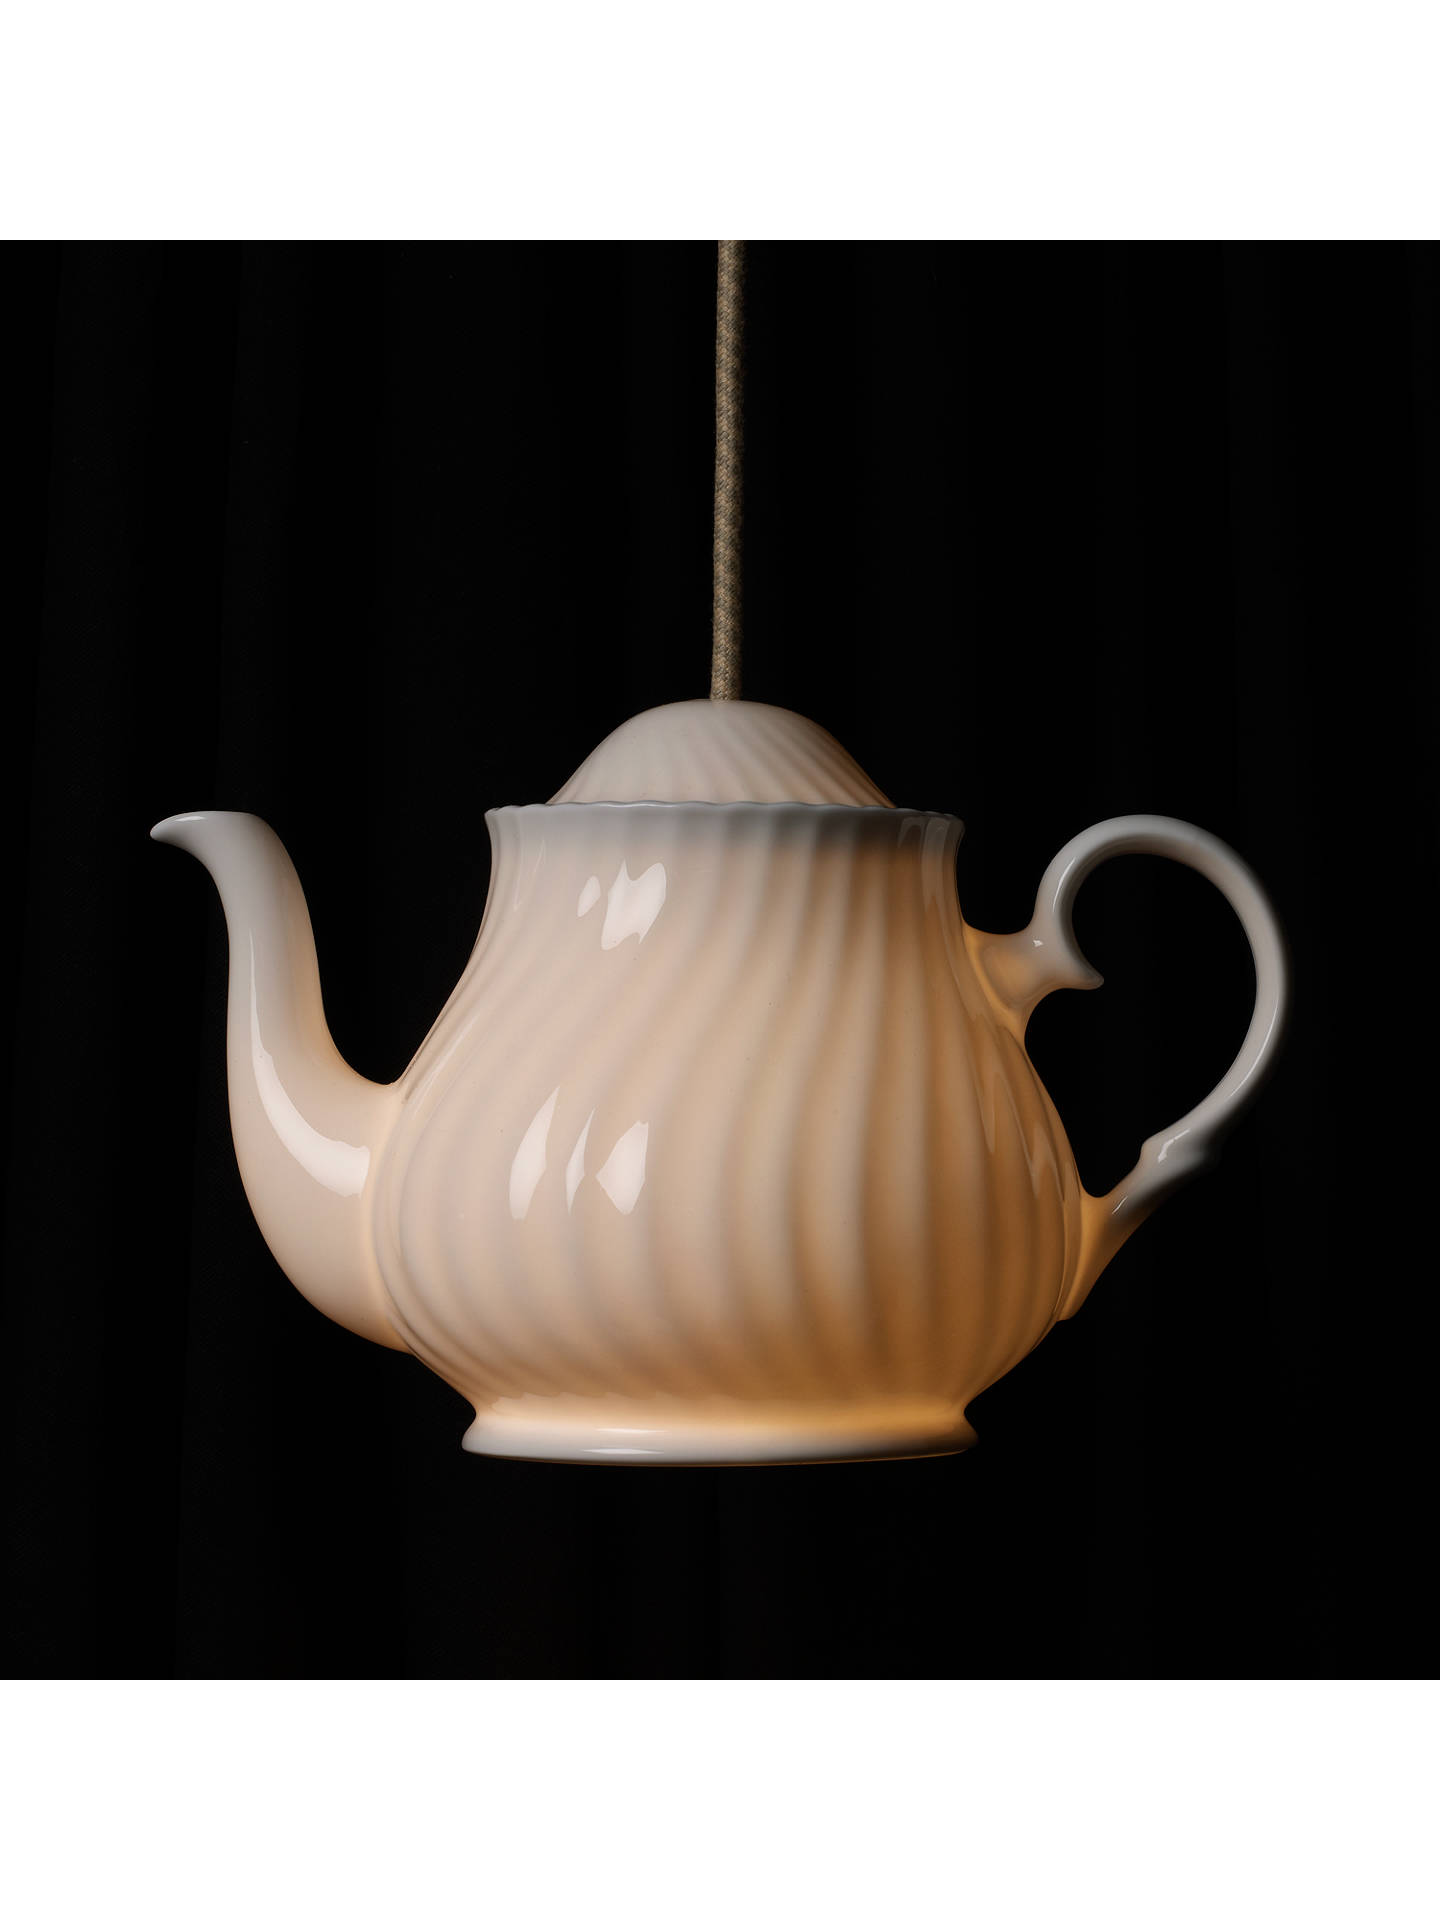 btc teapot pendant